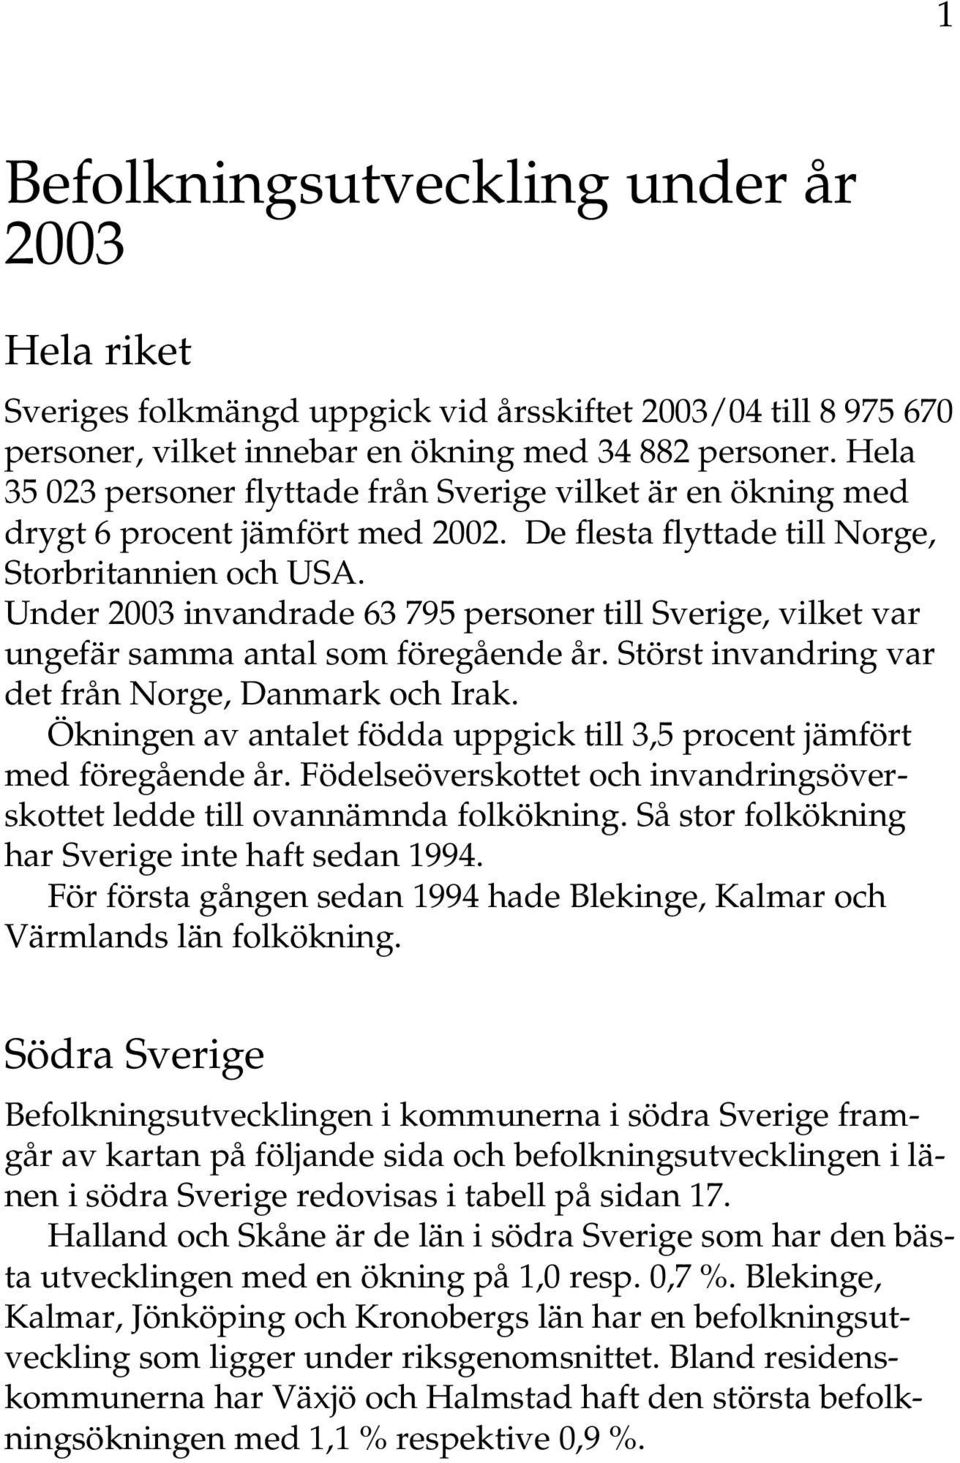 Under 2003 invandrade 63 795 personer till Sverige, vilket var ungefär samma antal som föregående år. Störst invandring var det från Norge, Danmark och Irak.